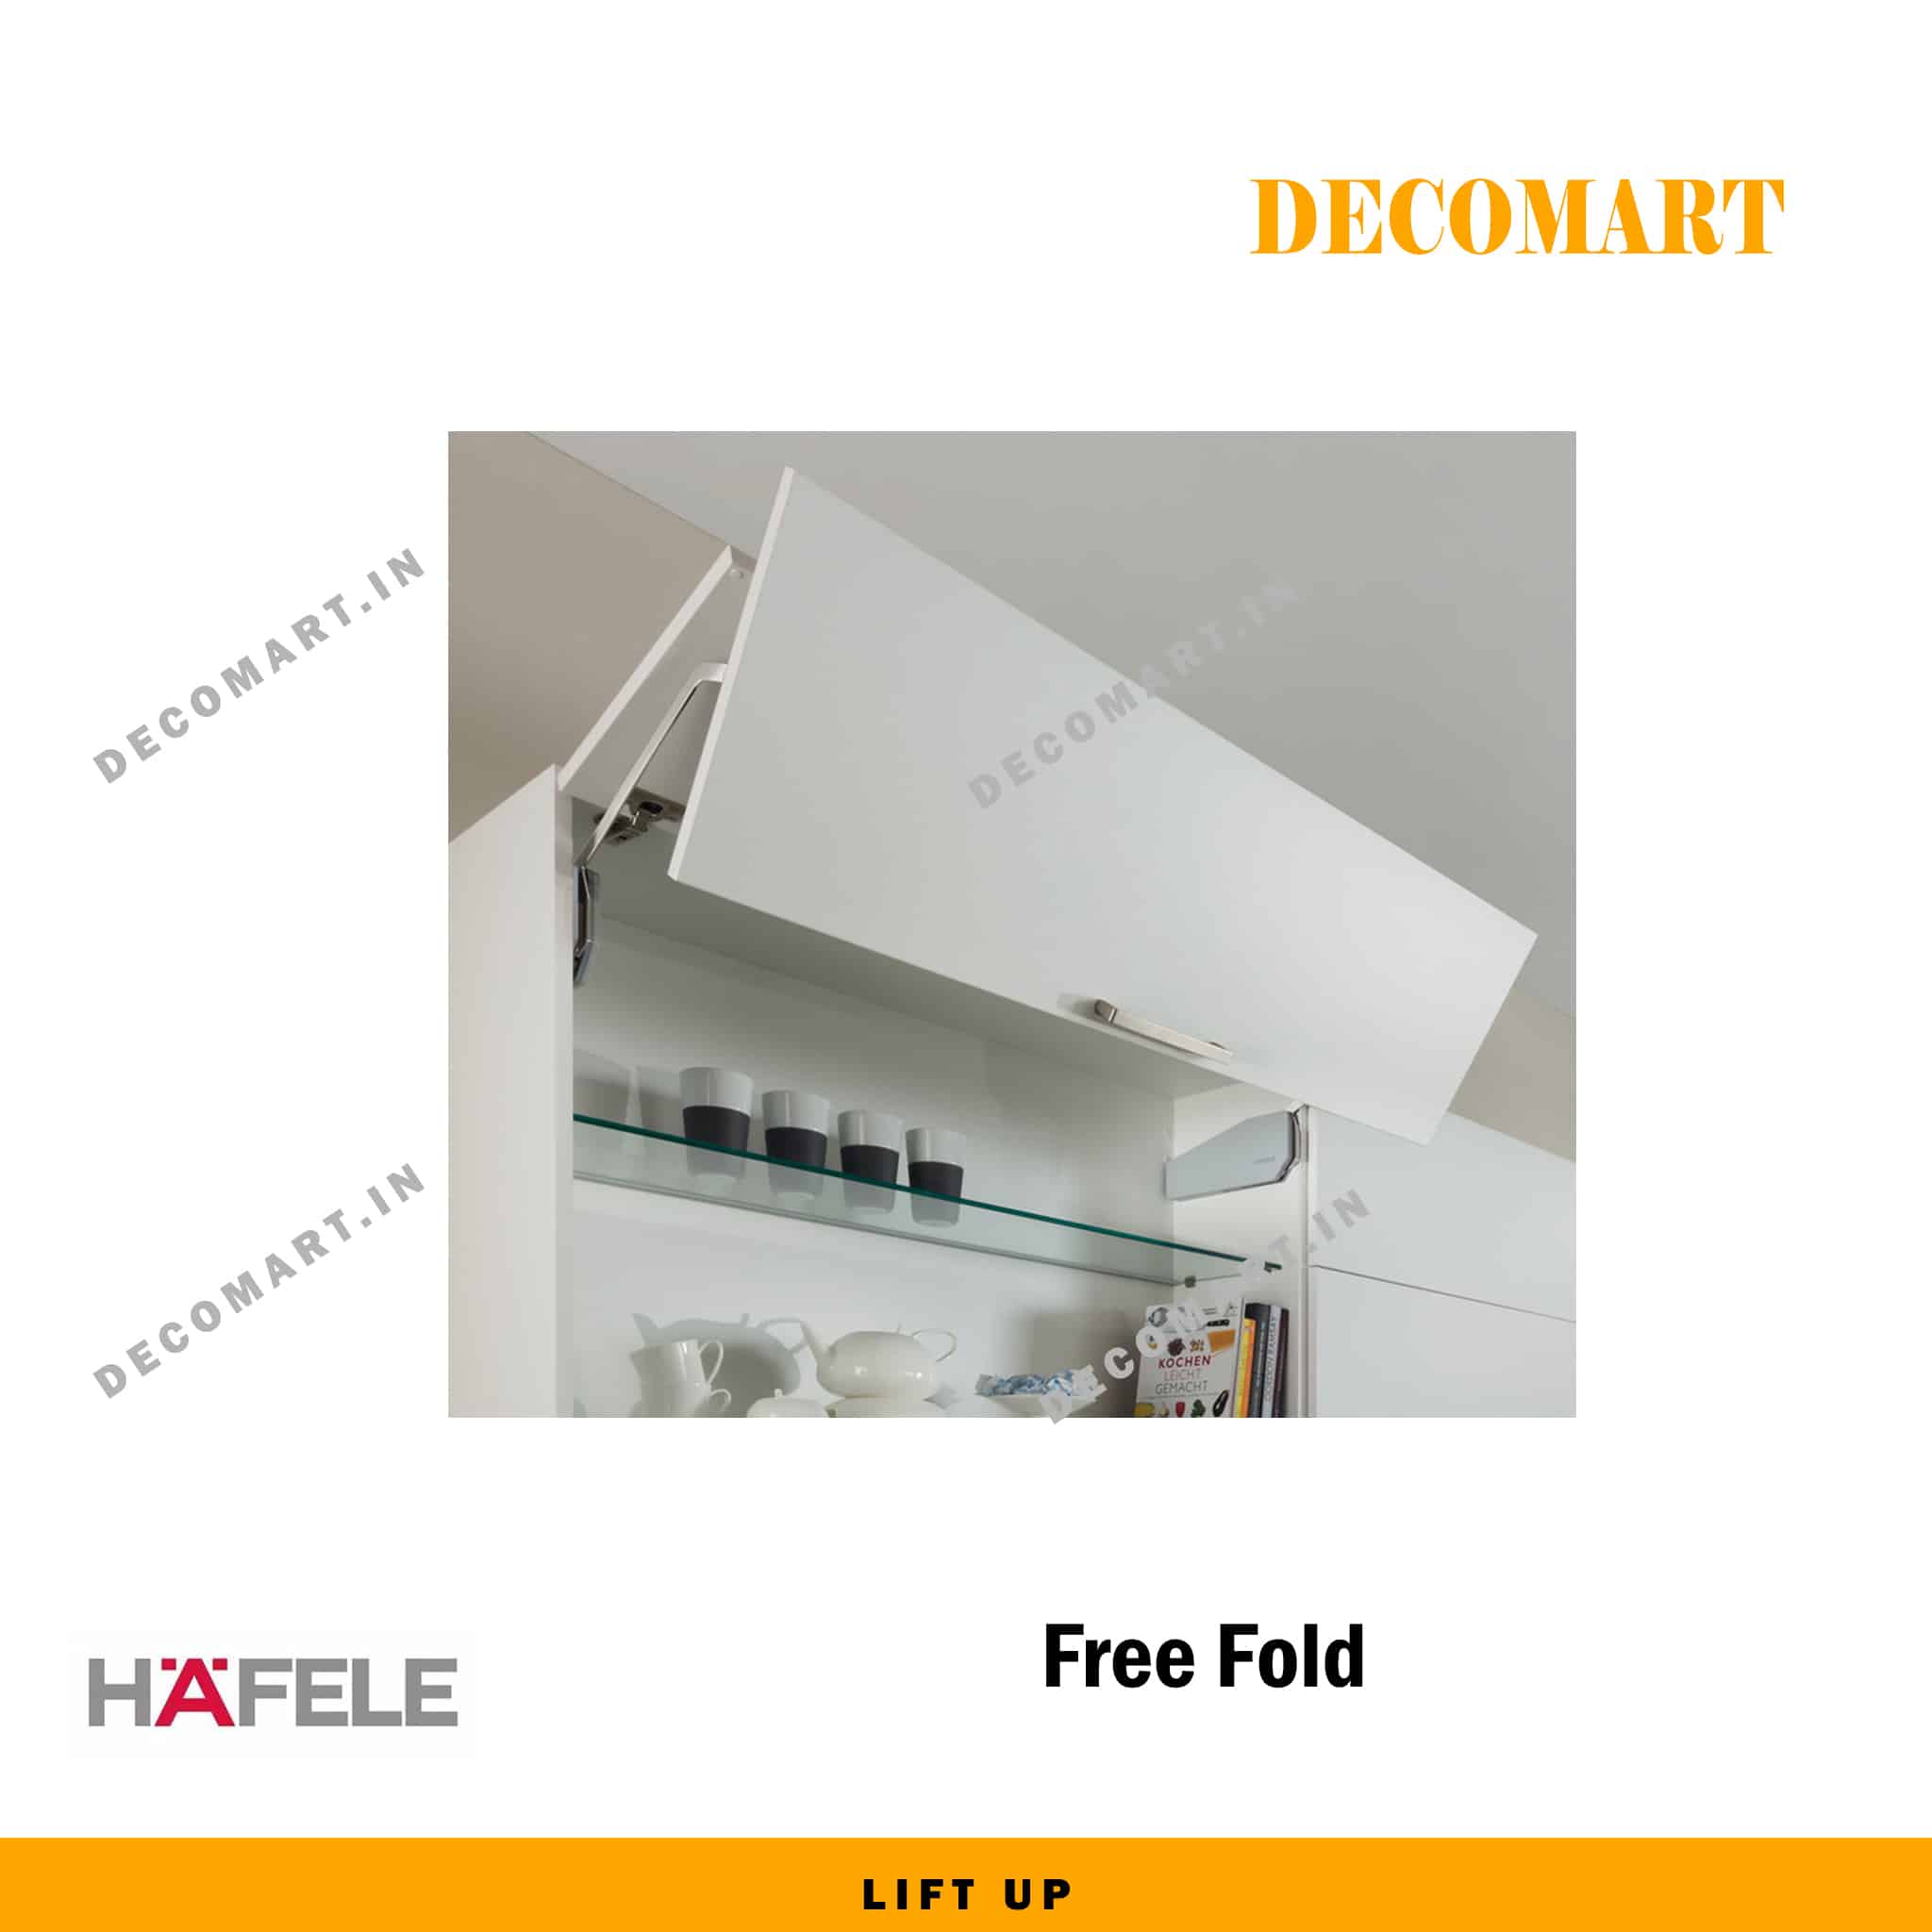 Hafele Free Fold Lift Up